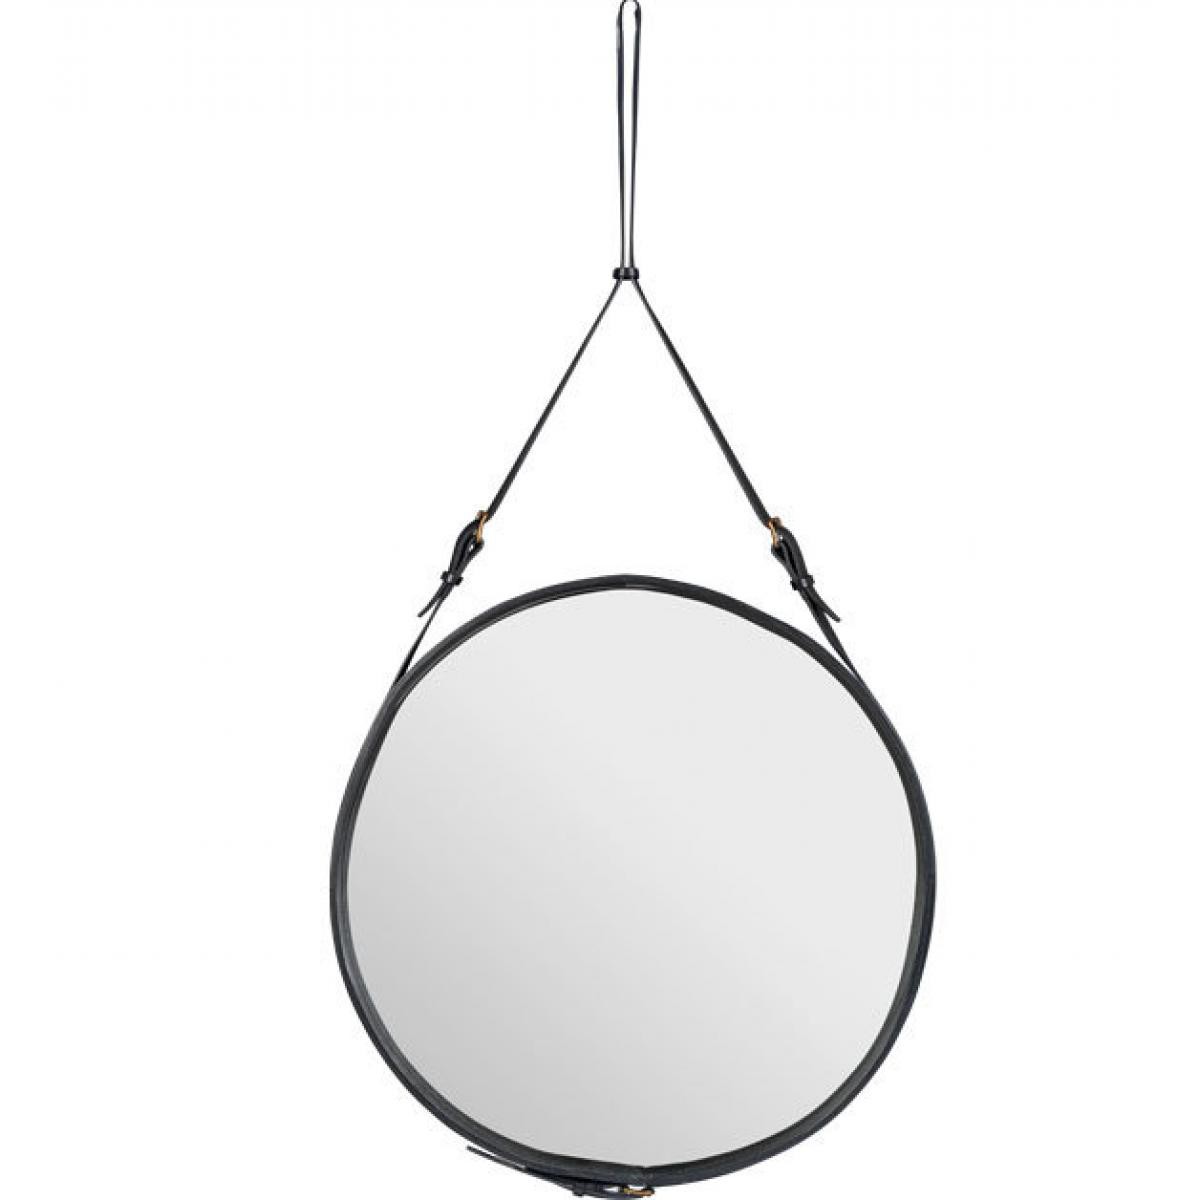 Gubi - Adnet miroir Circulaire - noir - Ø 70 cm - Miroirs